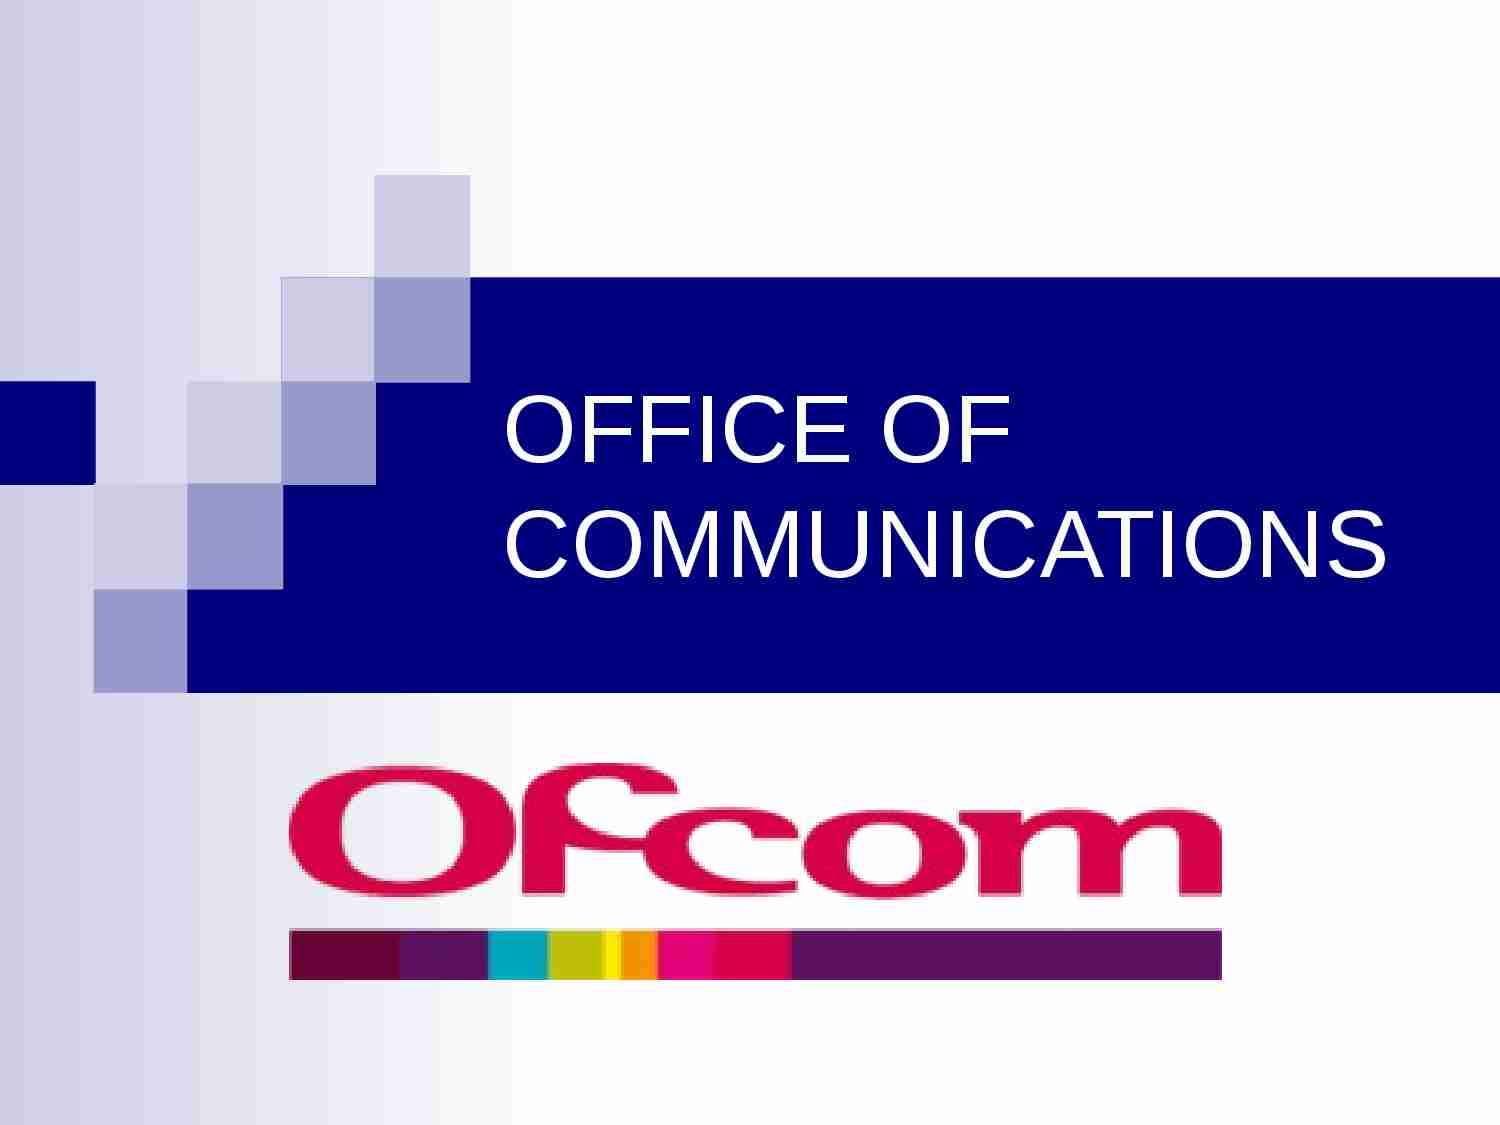 OFFICE OF COMMUNICATIONS-prezentacja - strona 1